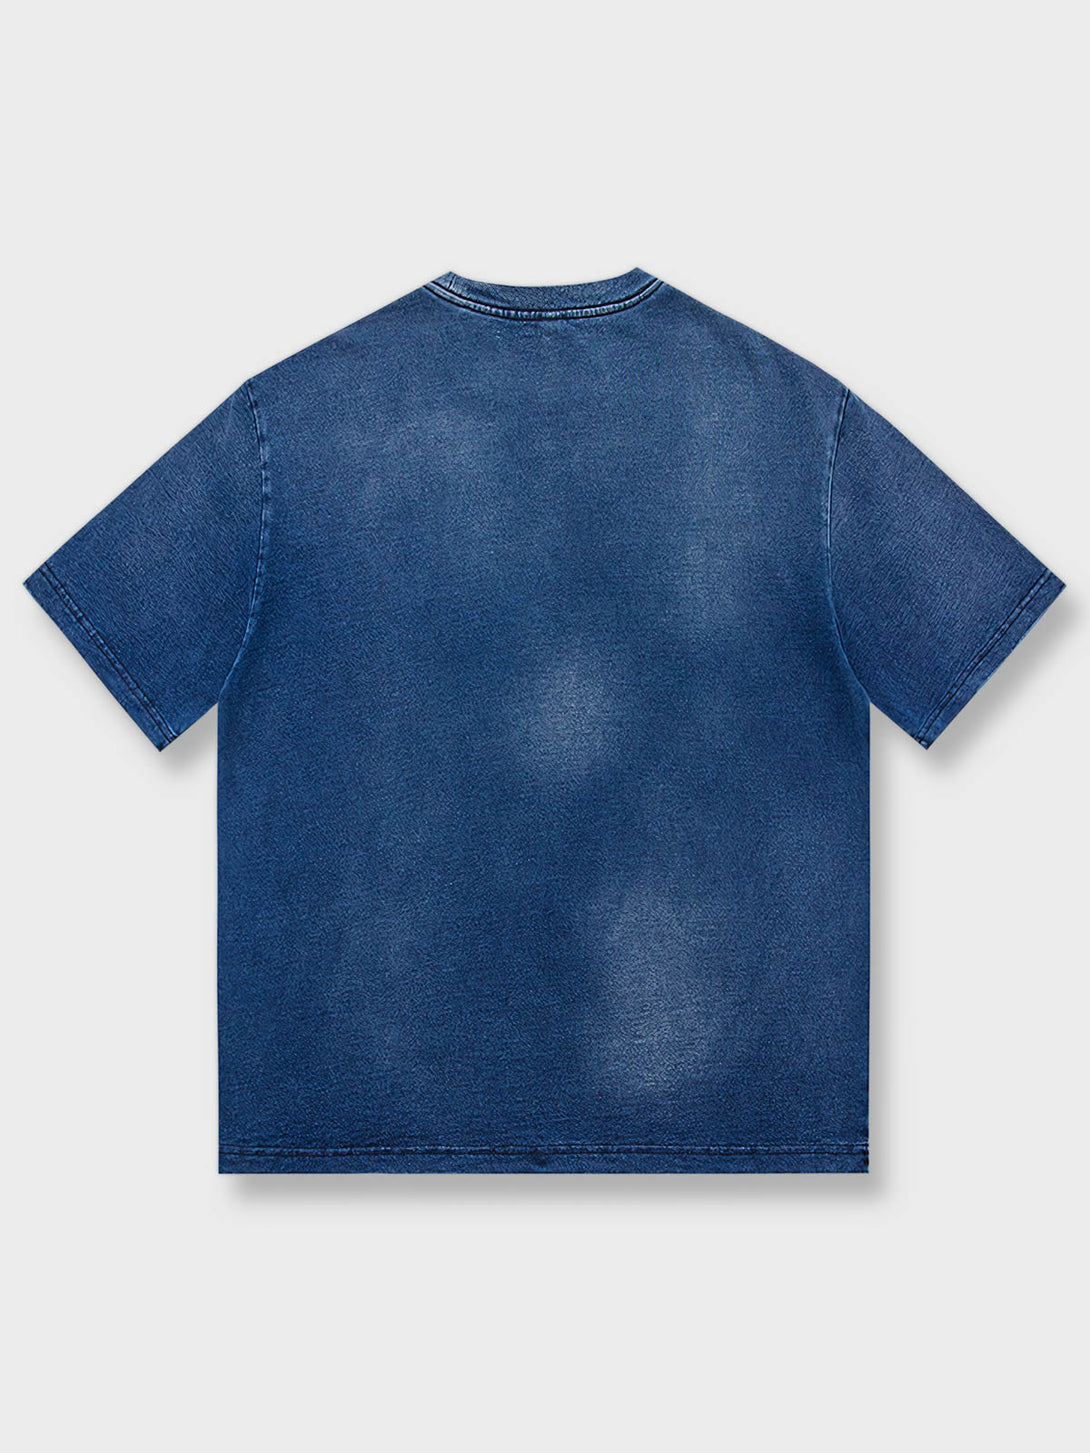 製品画像: ヘビーウェイト藍染めプリントTシャツの全体画像